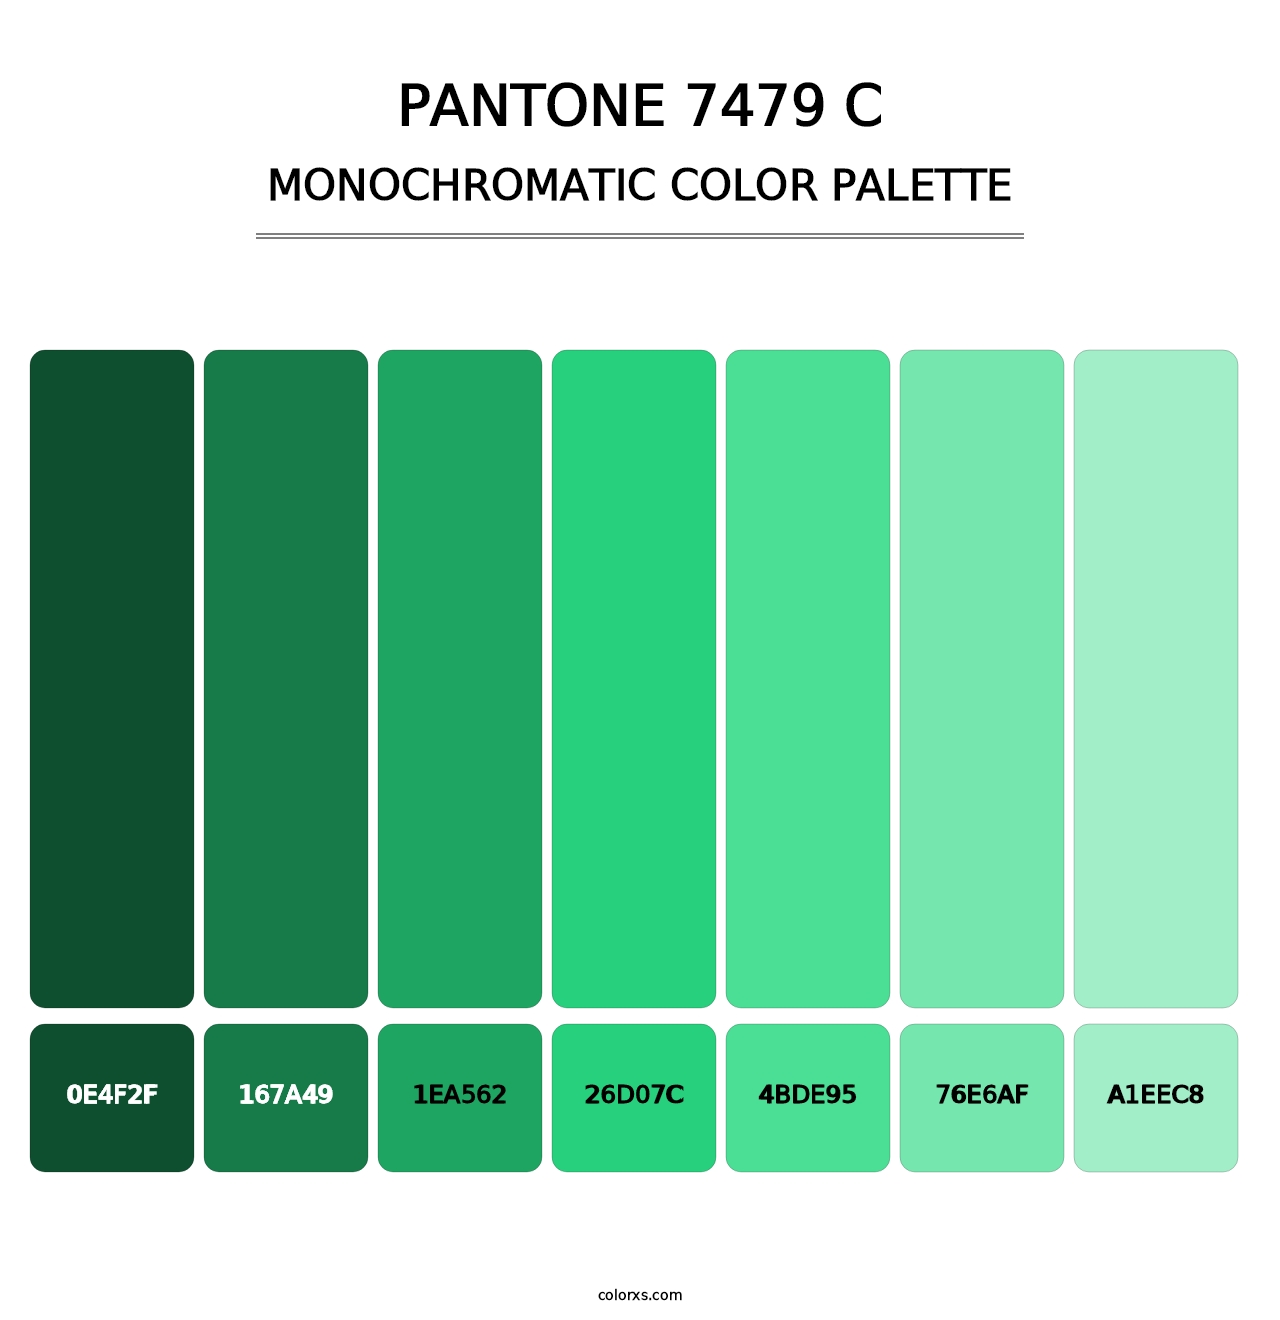 PANTONE 7479 C - Monochromatic Color Palette